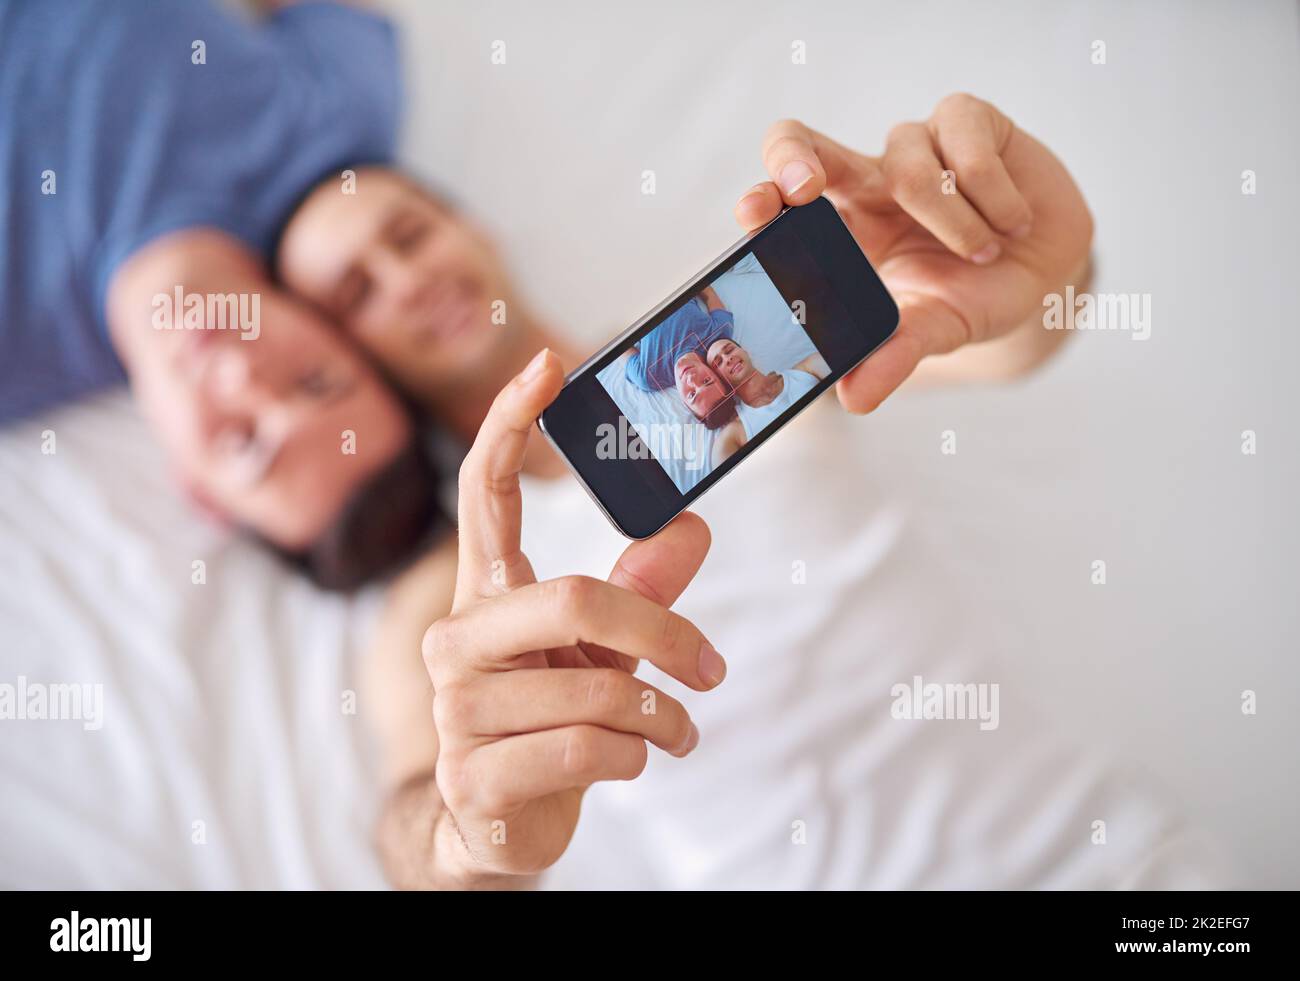 Einen Moment der Liebe festhalten. Aufnahme eines jungen schwulen Paares, das ein Selfie beim Entspannen im Bett gemacht hat. Stockfoto